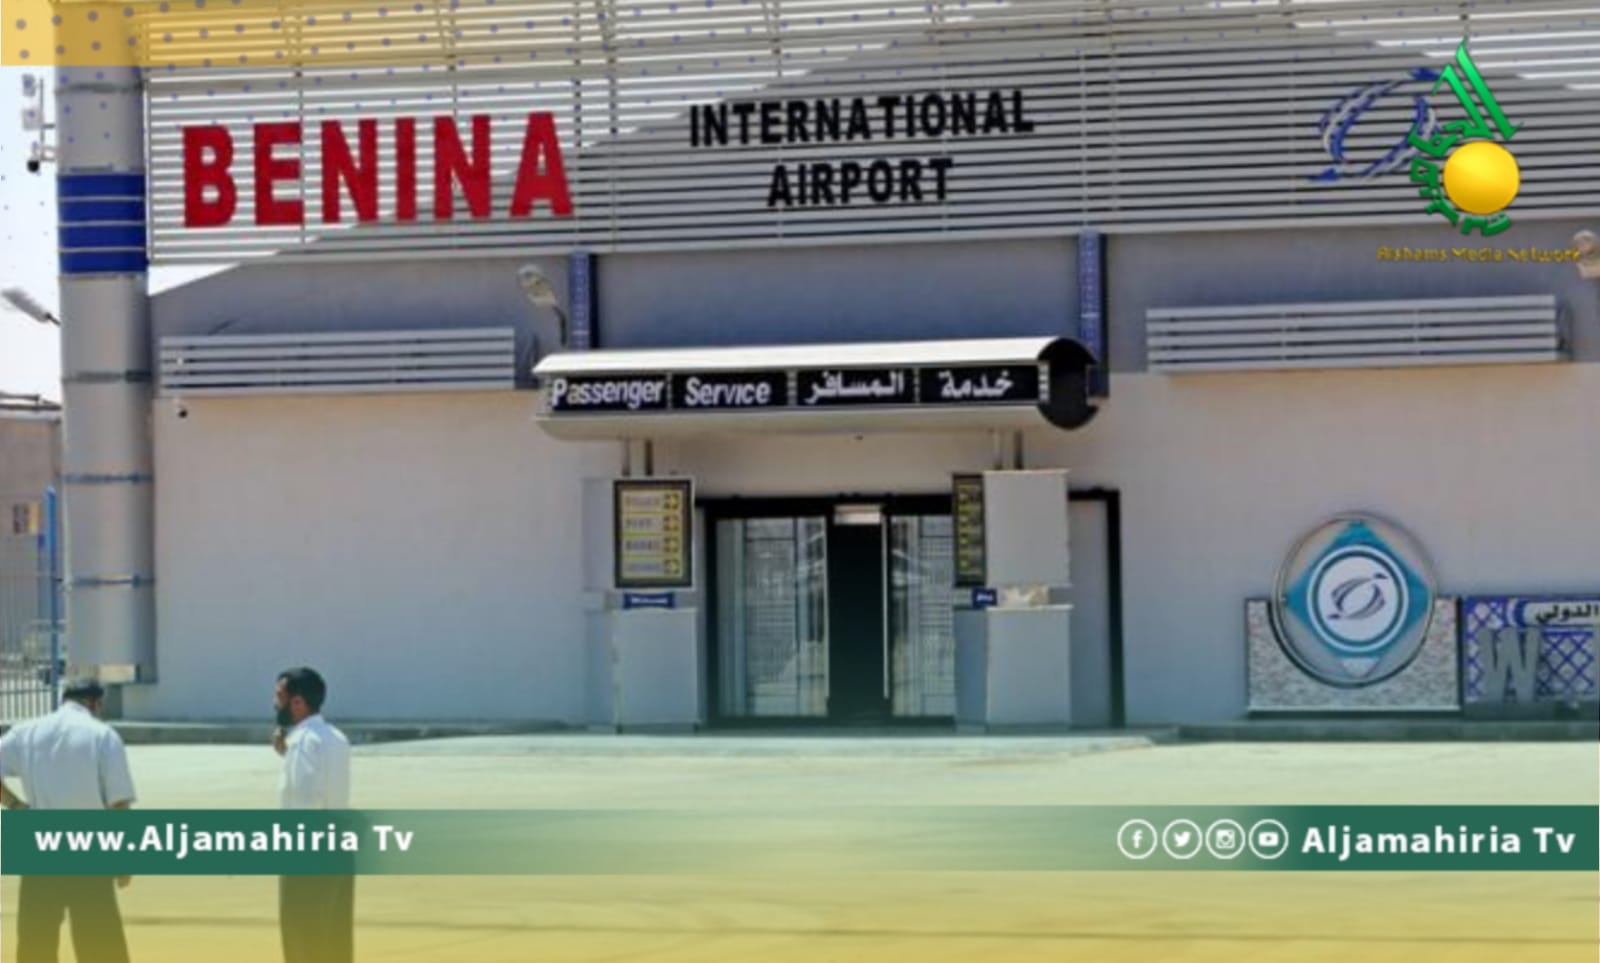 مطار بنينا الدولي